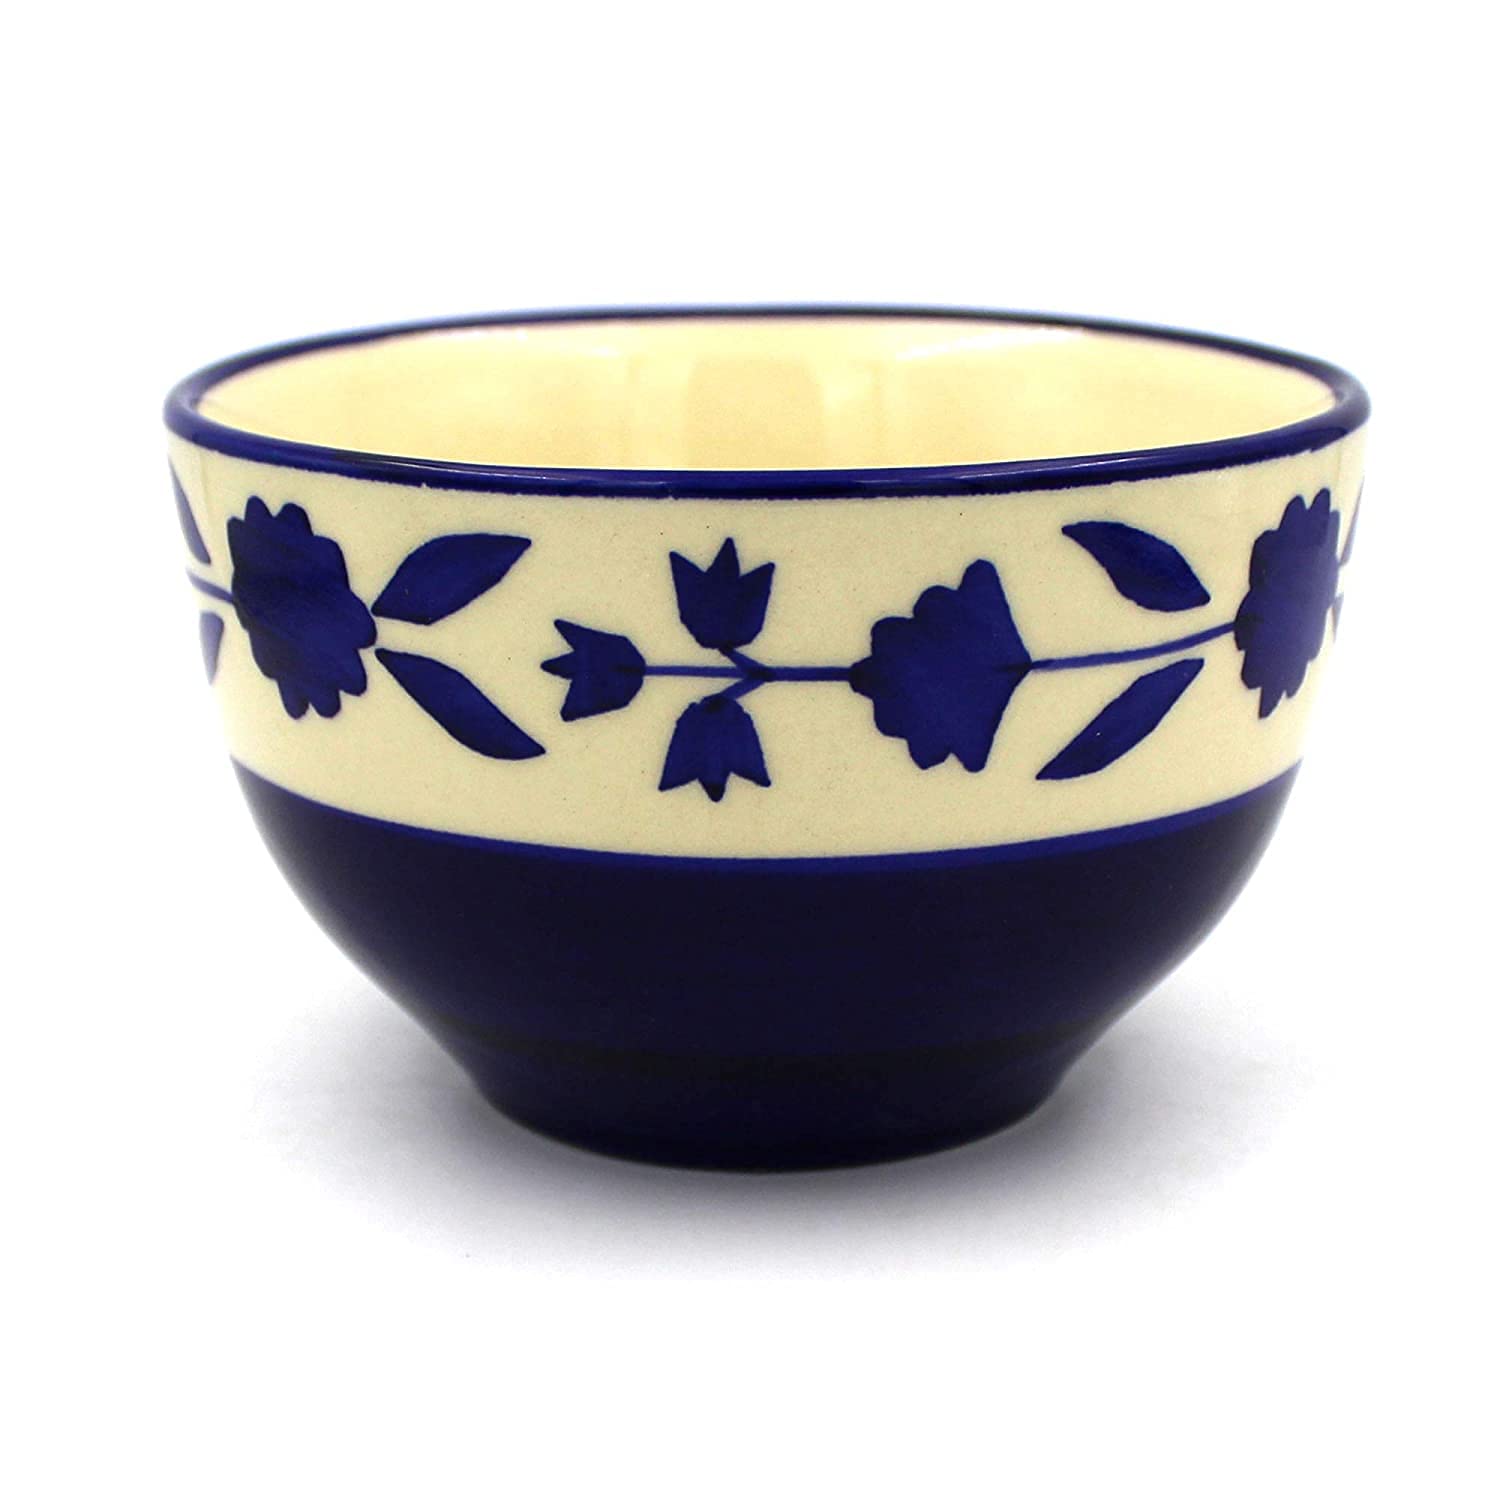 Handled Ceramic Soup Bowls, Floral Blue, 350 ML, Microwave Safe